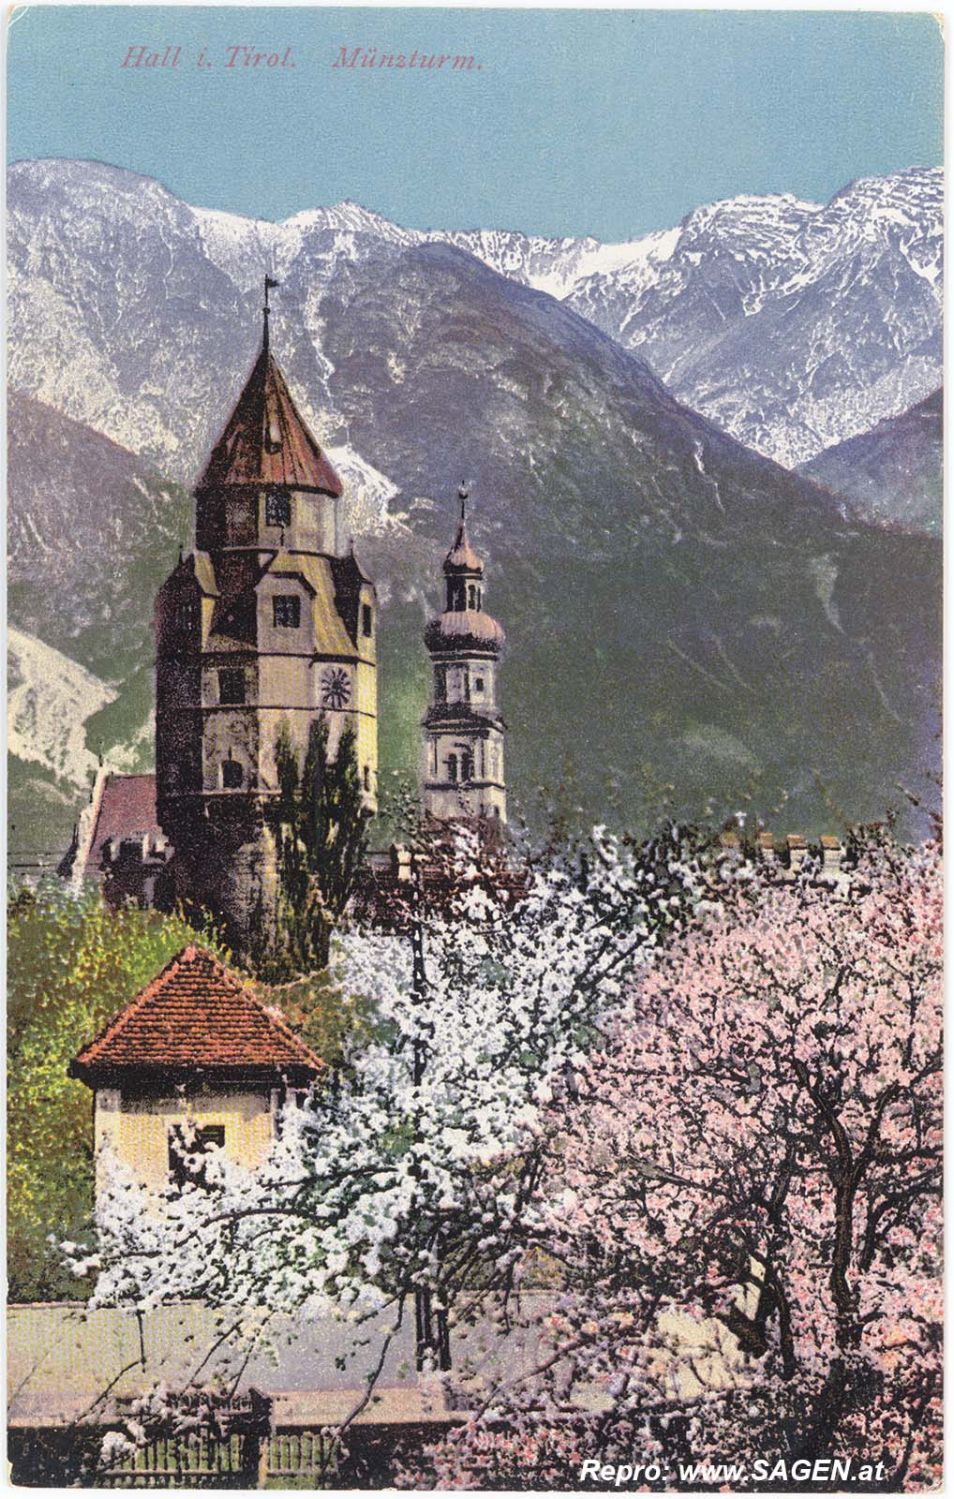 Hall in Tirol - Münzturm